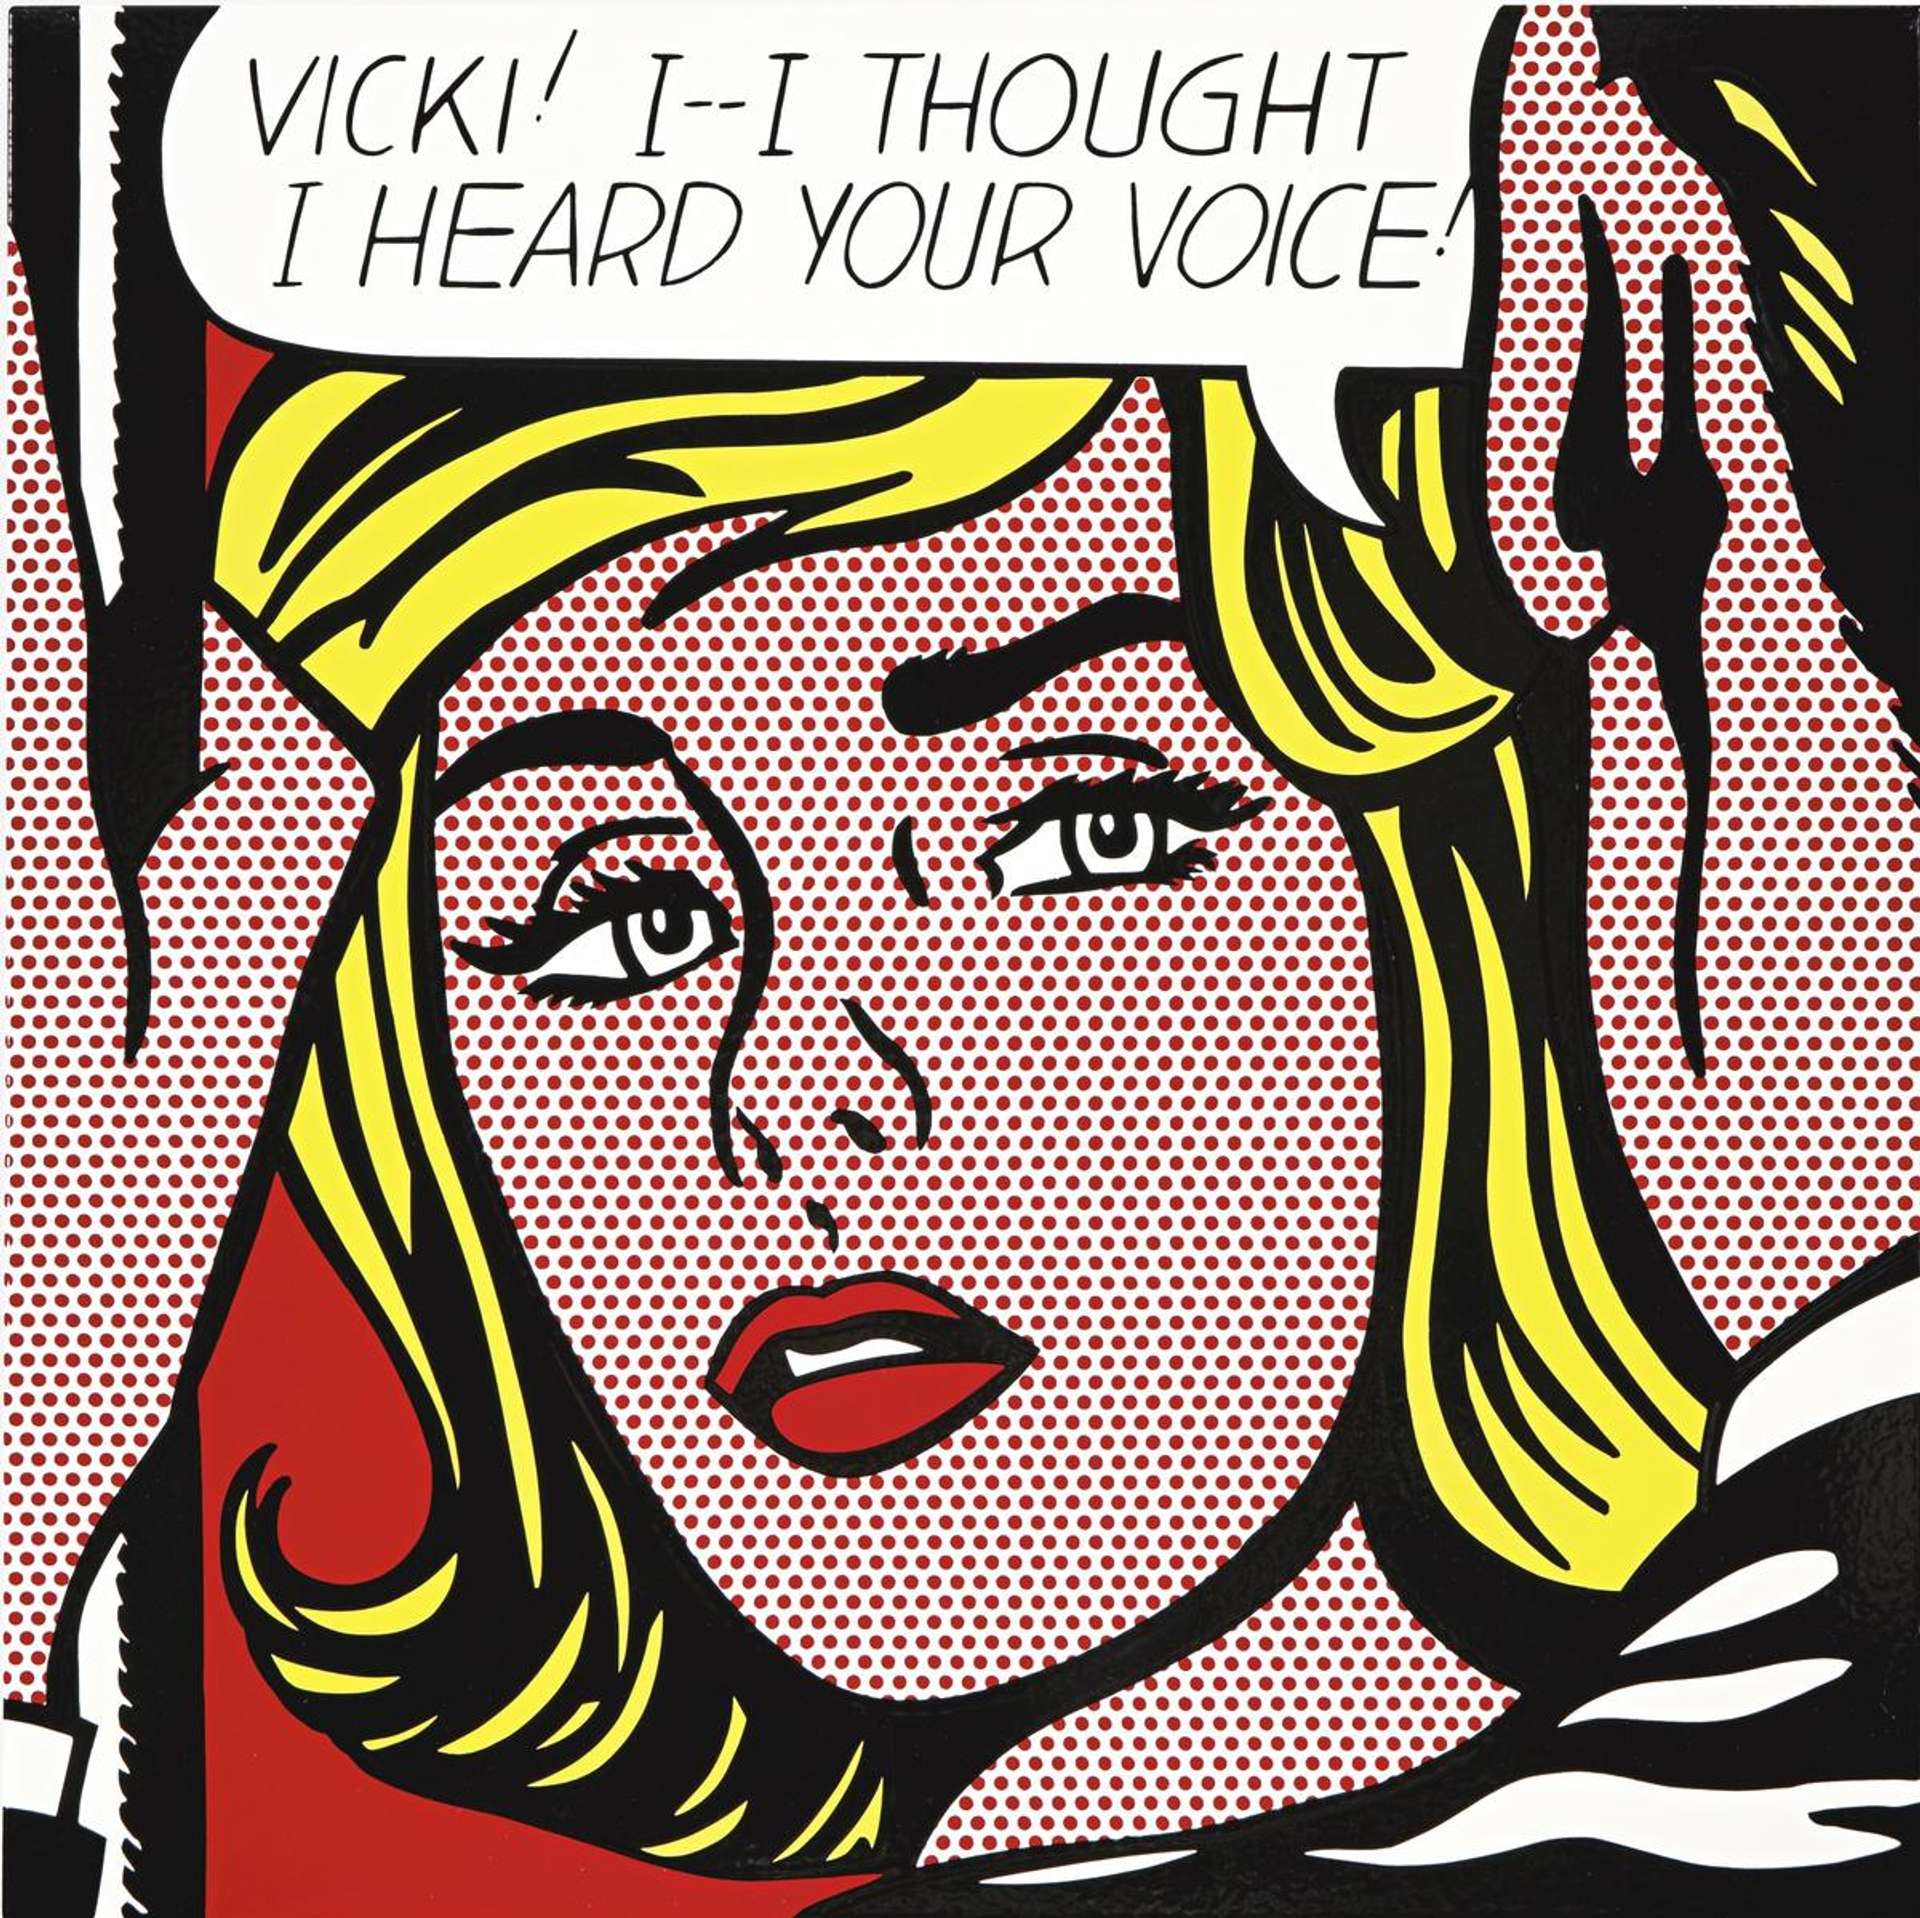 10 Things To Know About Lichtenstein's Pop Art